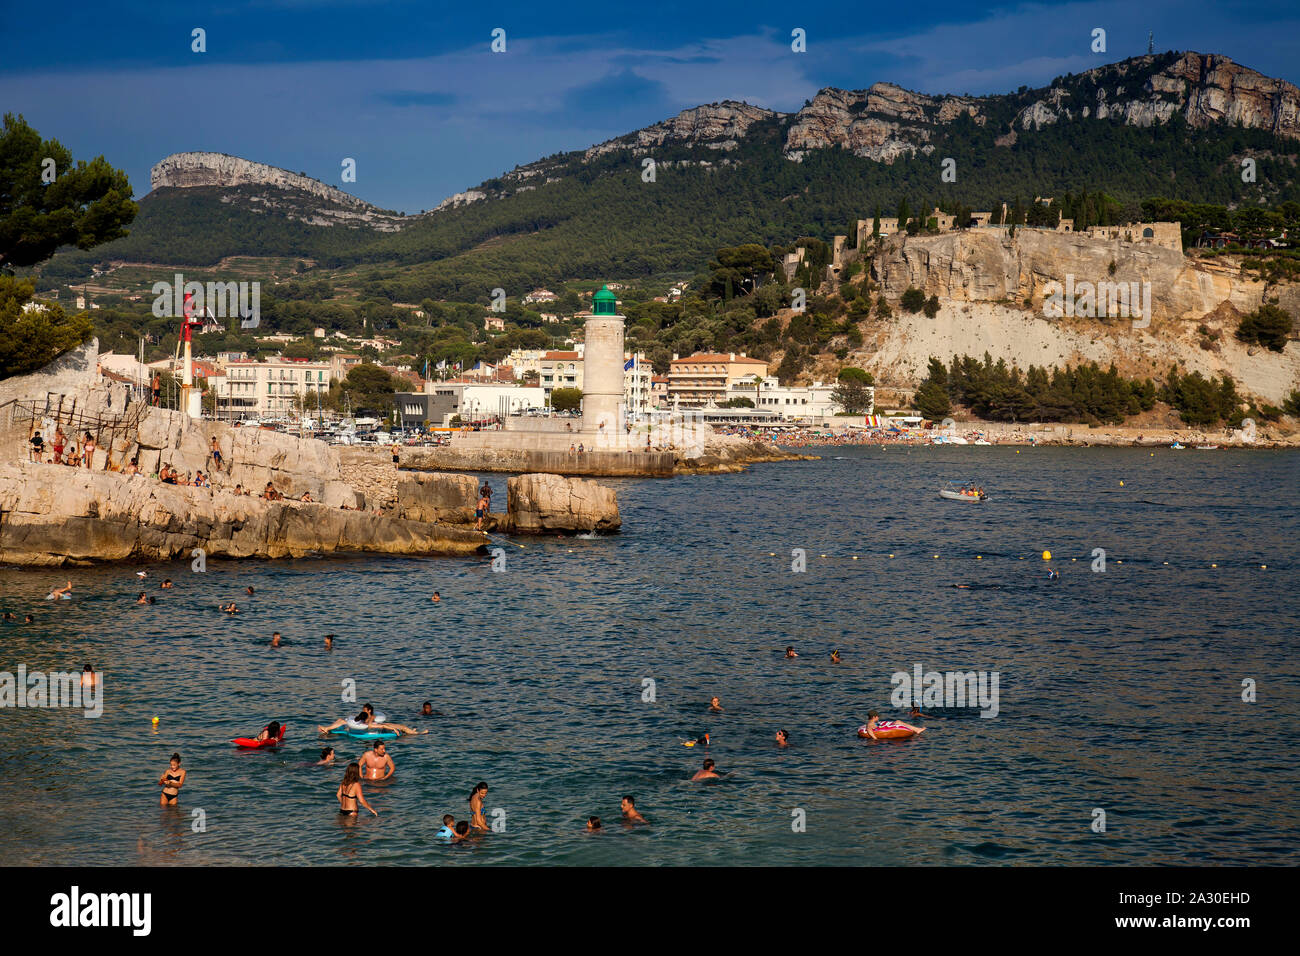 Menschen baden am Strand, Plage Le Bestouan, im Hintergrund der Leuchtturm von Cassis,Bouches-du-Rhone, Provence-Alpes-Côte d’Azur, Südfrankreich, Fra Stock Photo